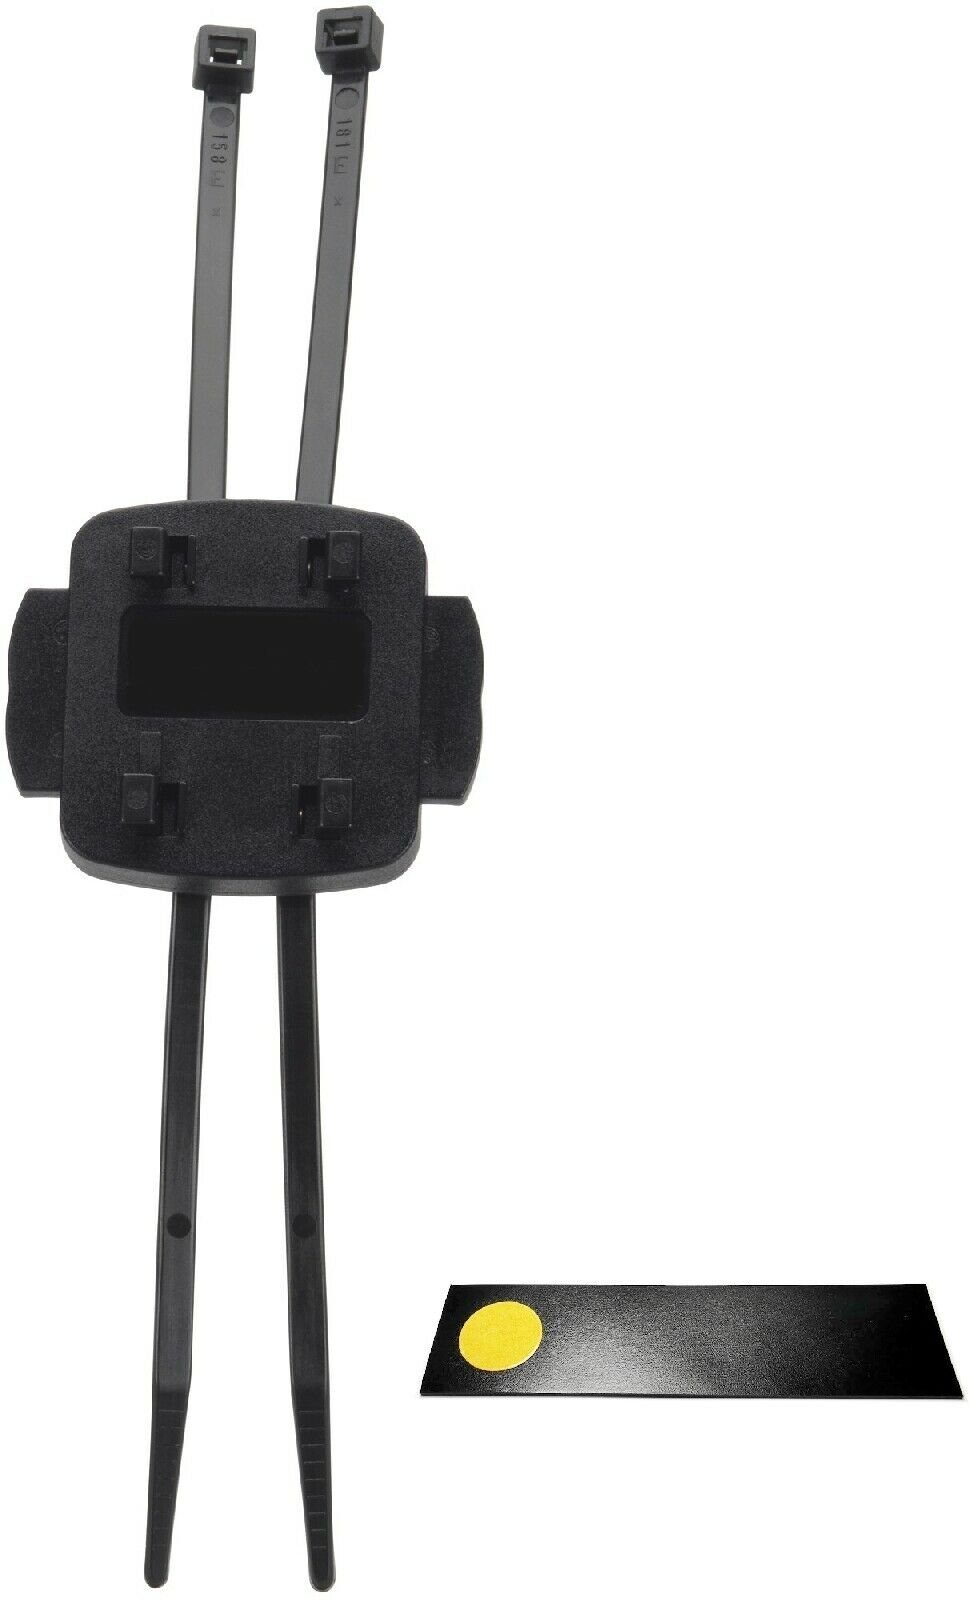 TEASI Bike Fahrrad Motorrad Halter Fix Light Lenkerhalter schwarz ca. 4 x 5 x 3 cm Navigationsgeräte-Halterung